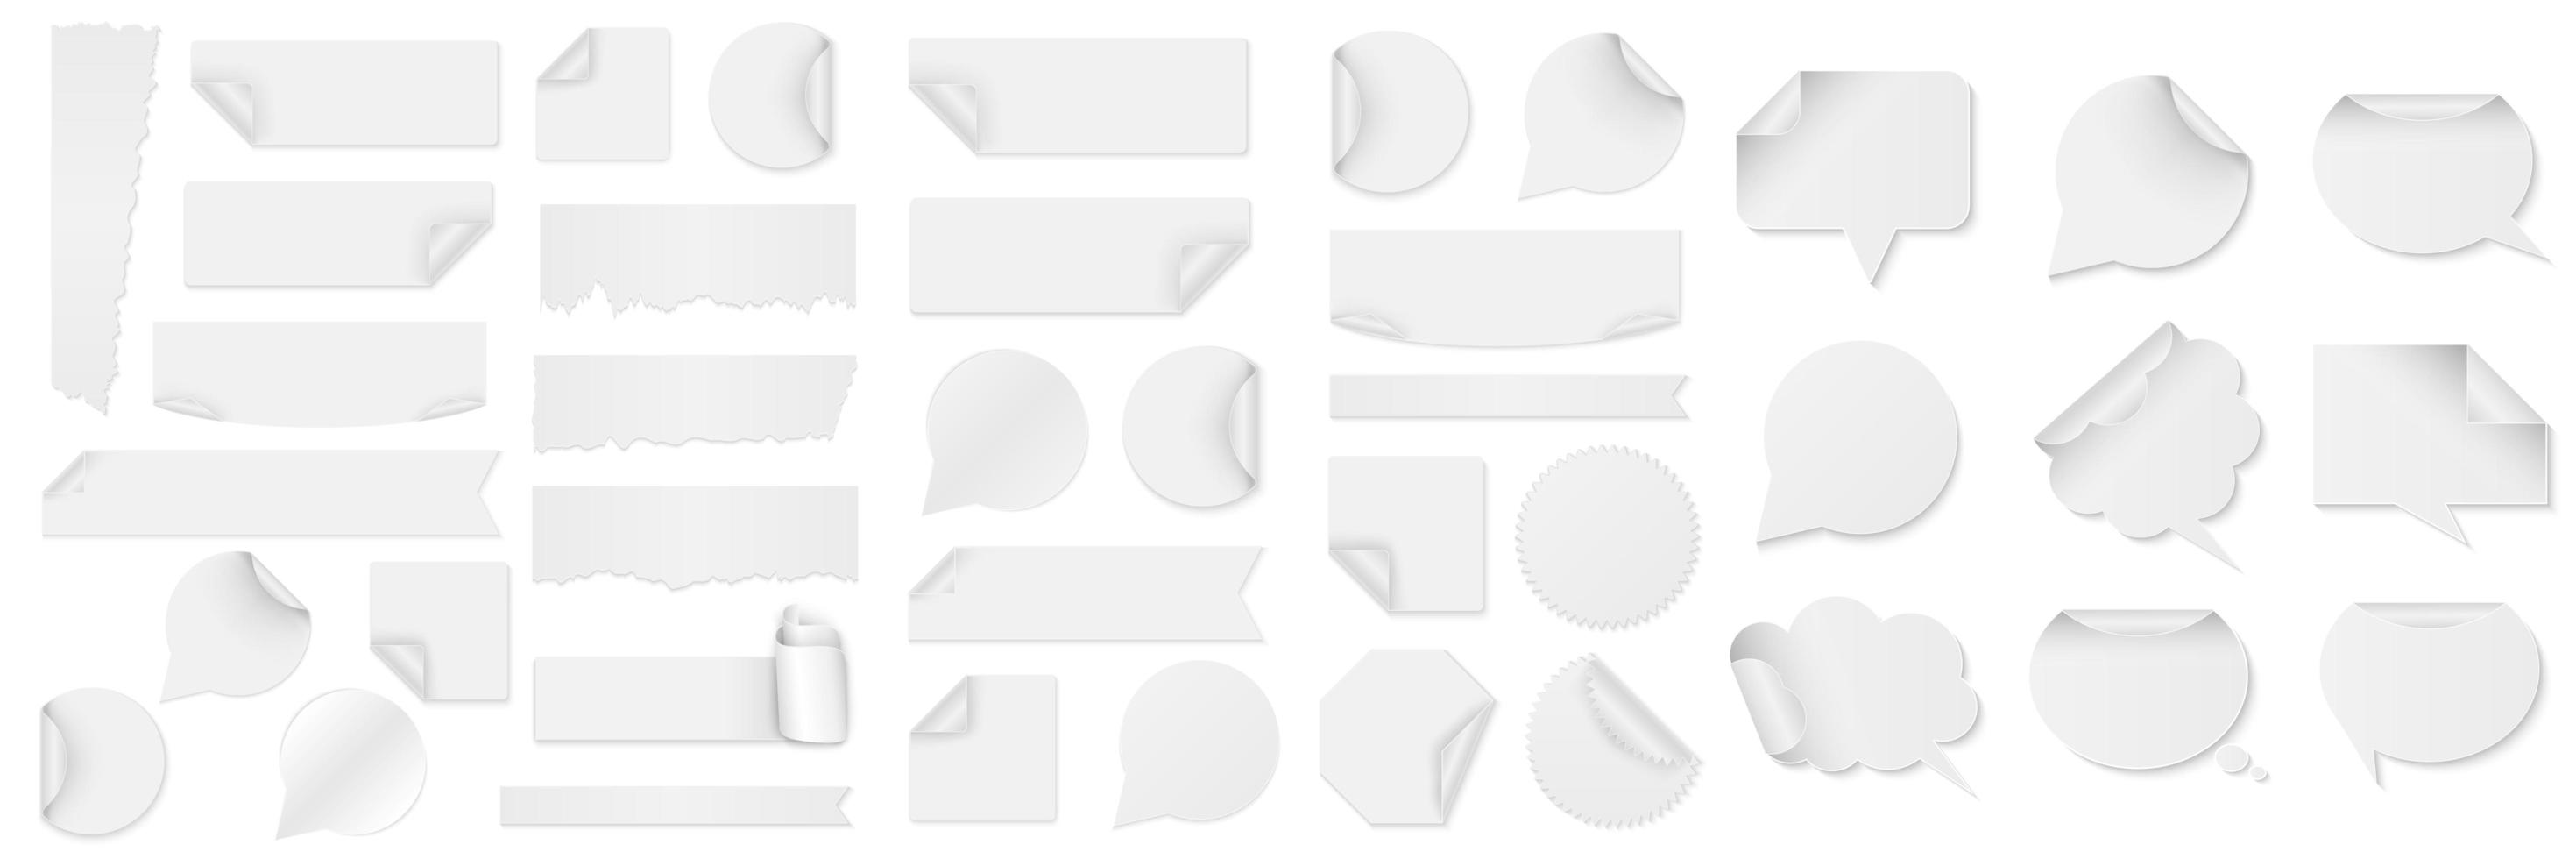 fascio di adesivi di carta bianca di diverse forme vettore